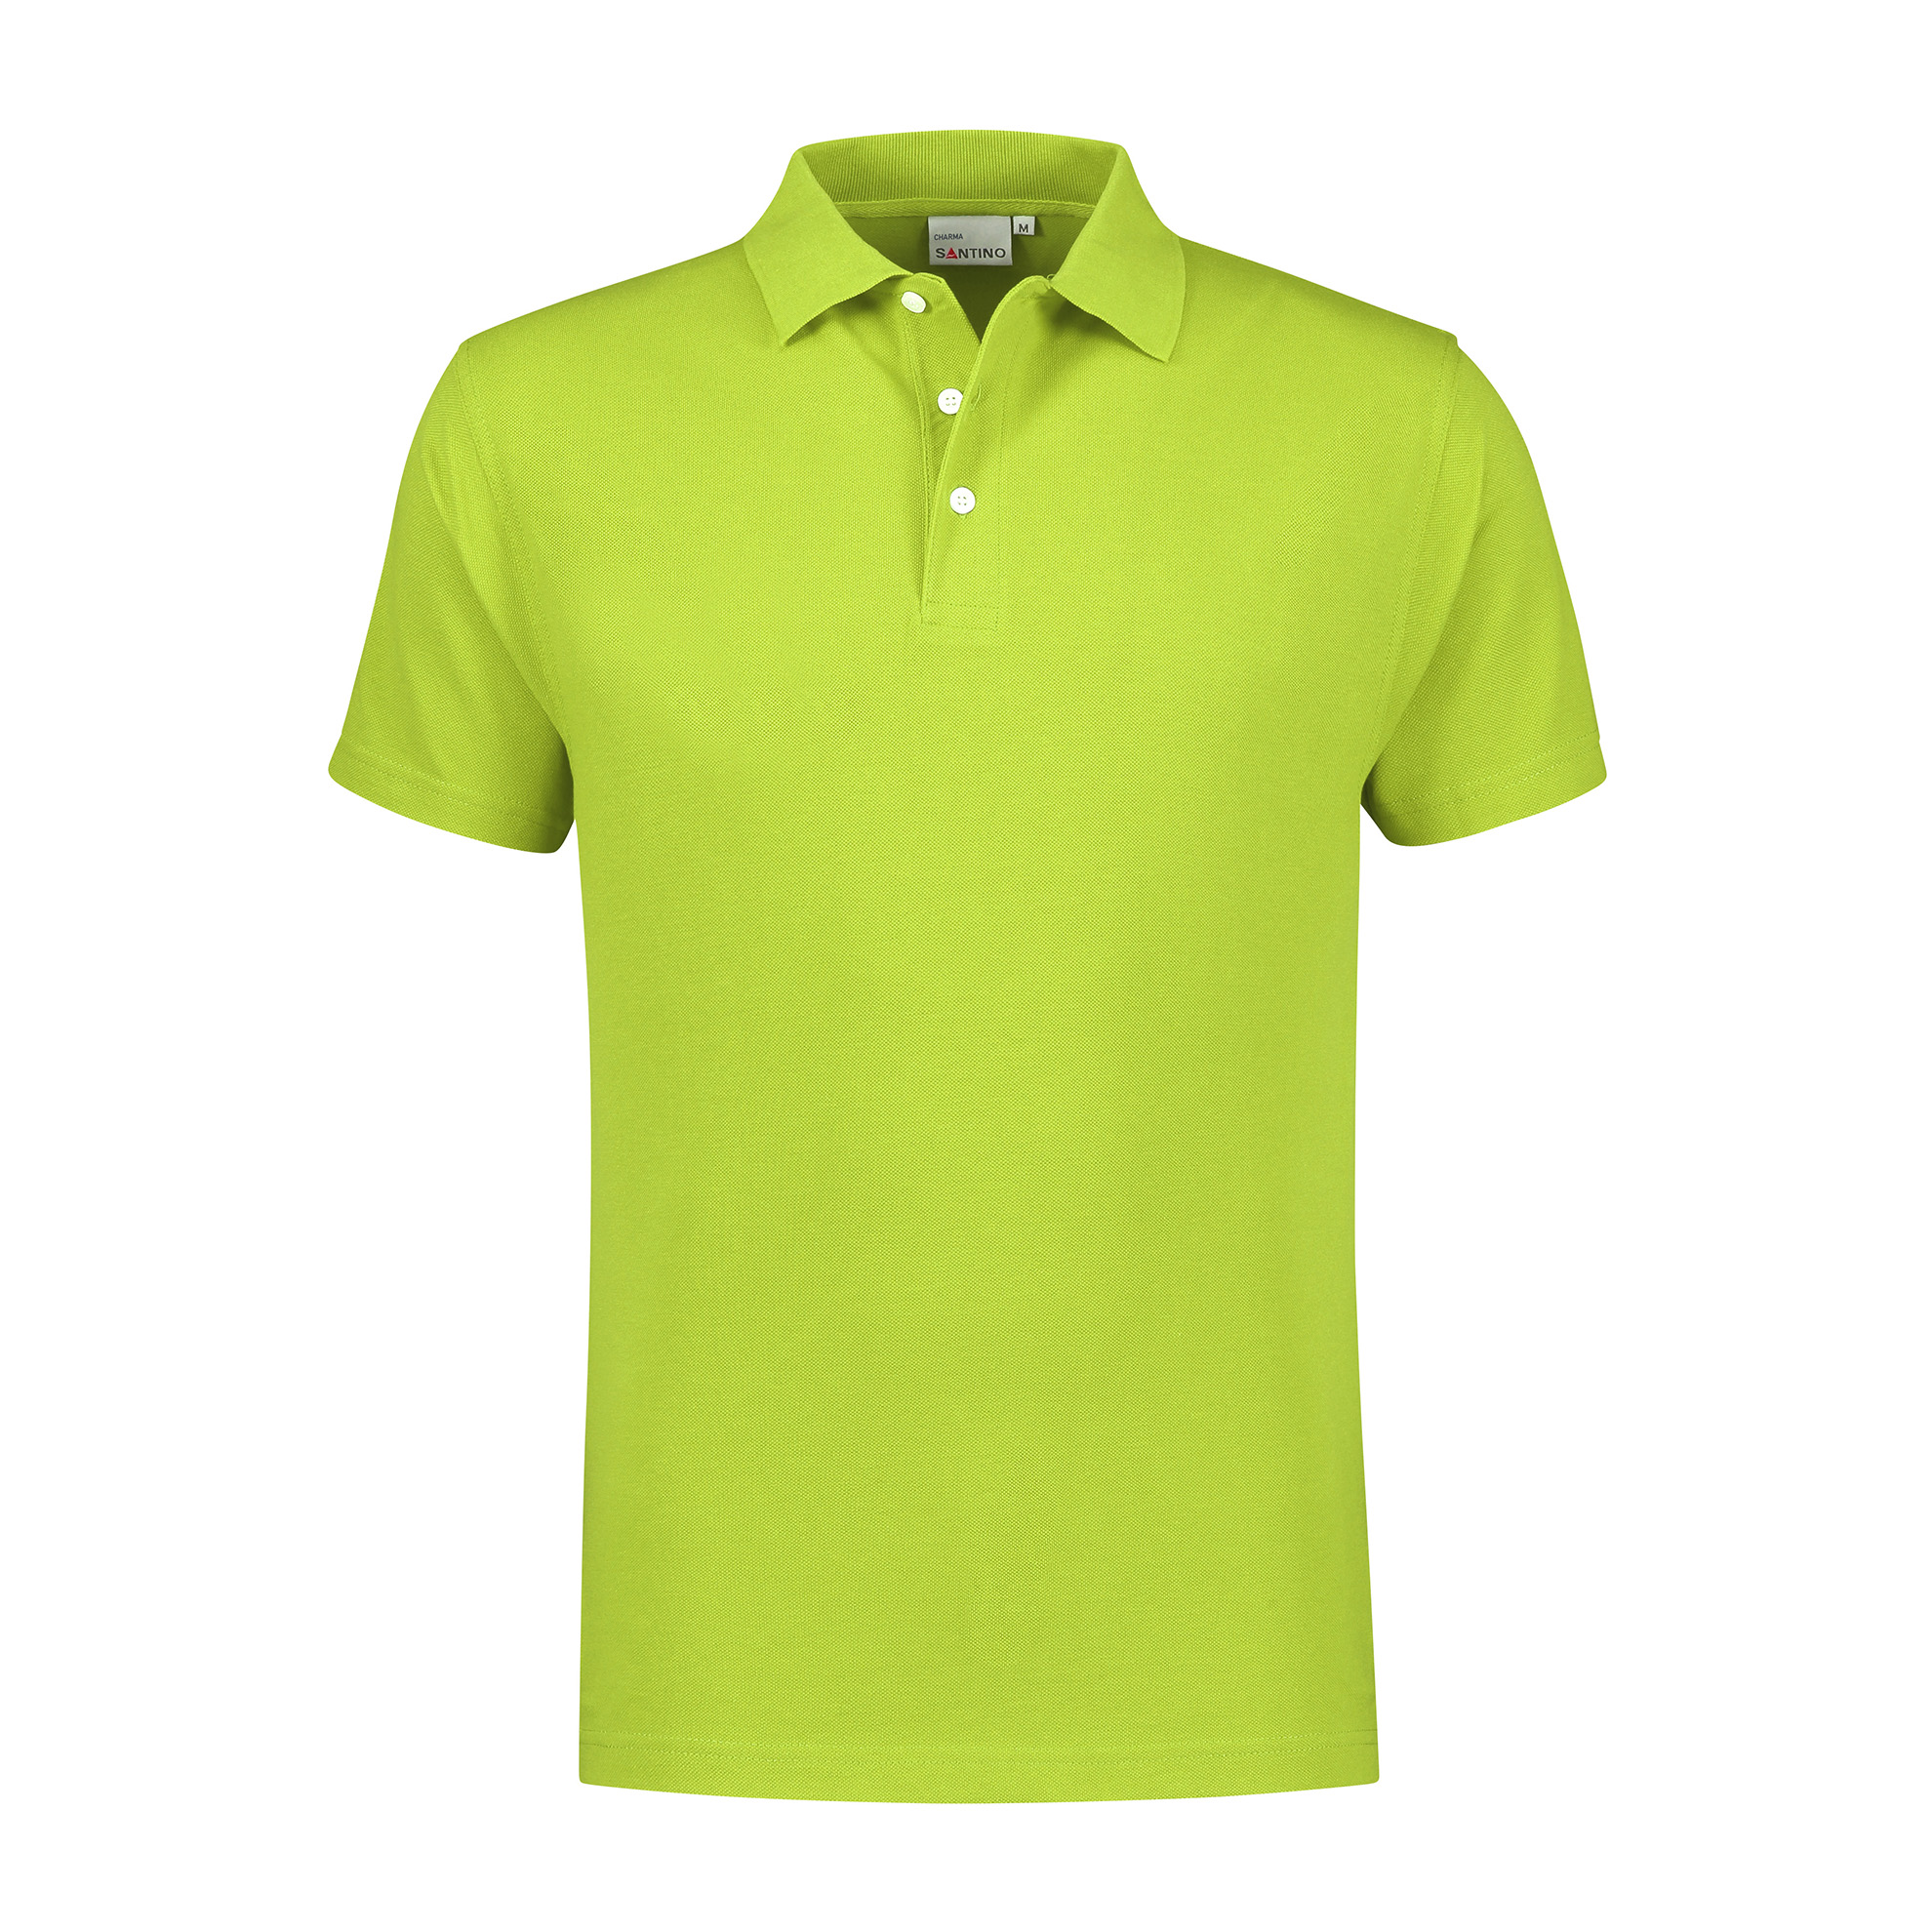 Santino Poloshirt Charma - Lime XL - Basic Line